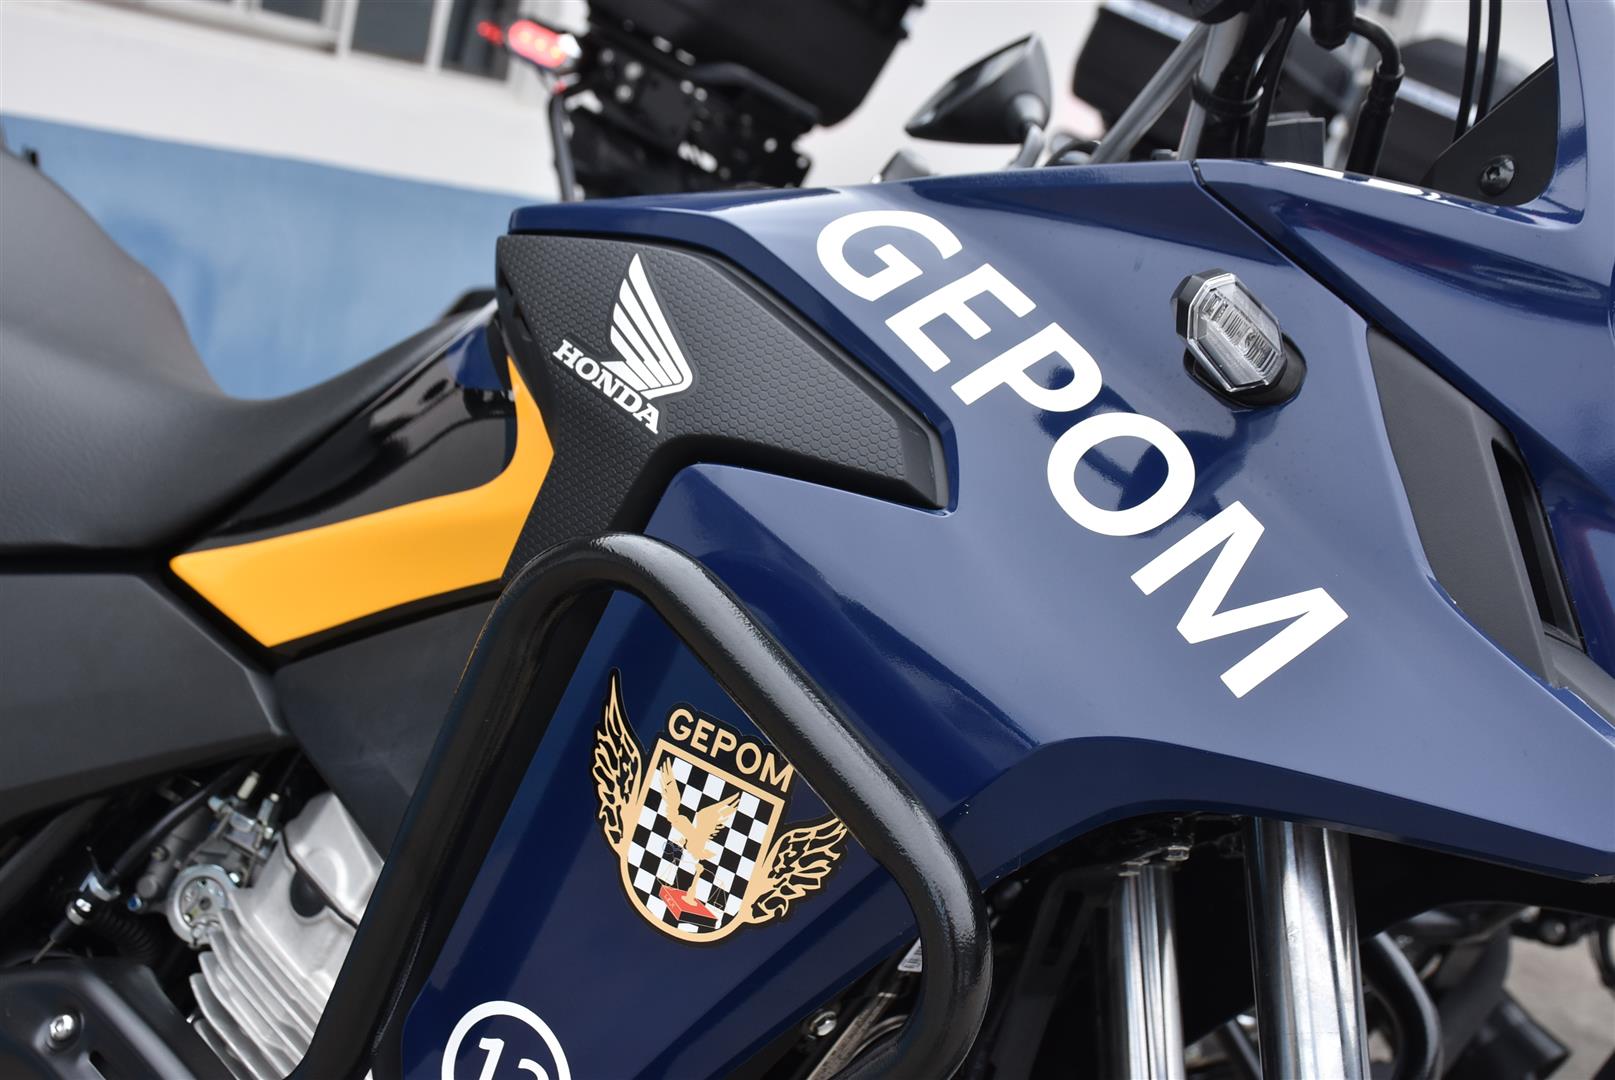 Guarda Civil Municipal de Barueri adquire novas motos que dão mais